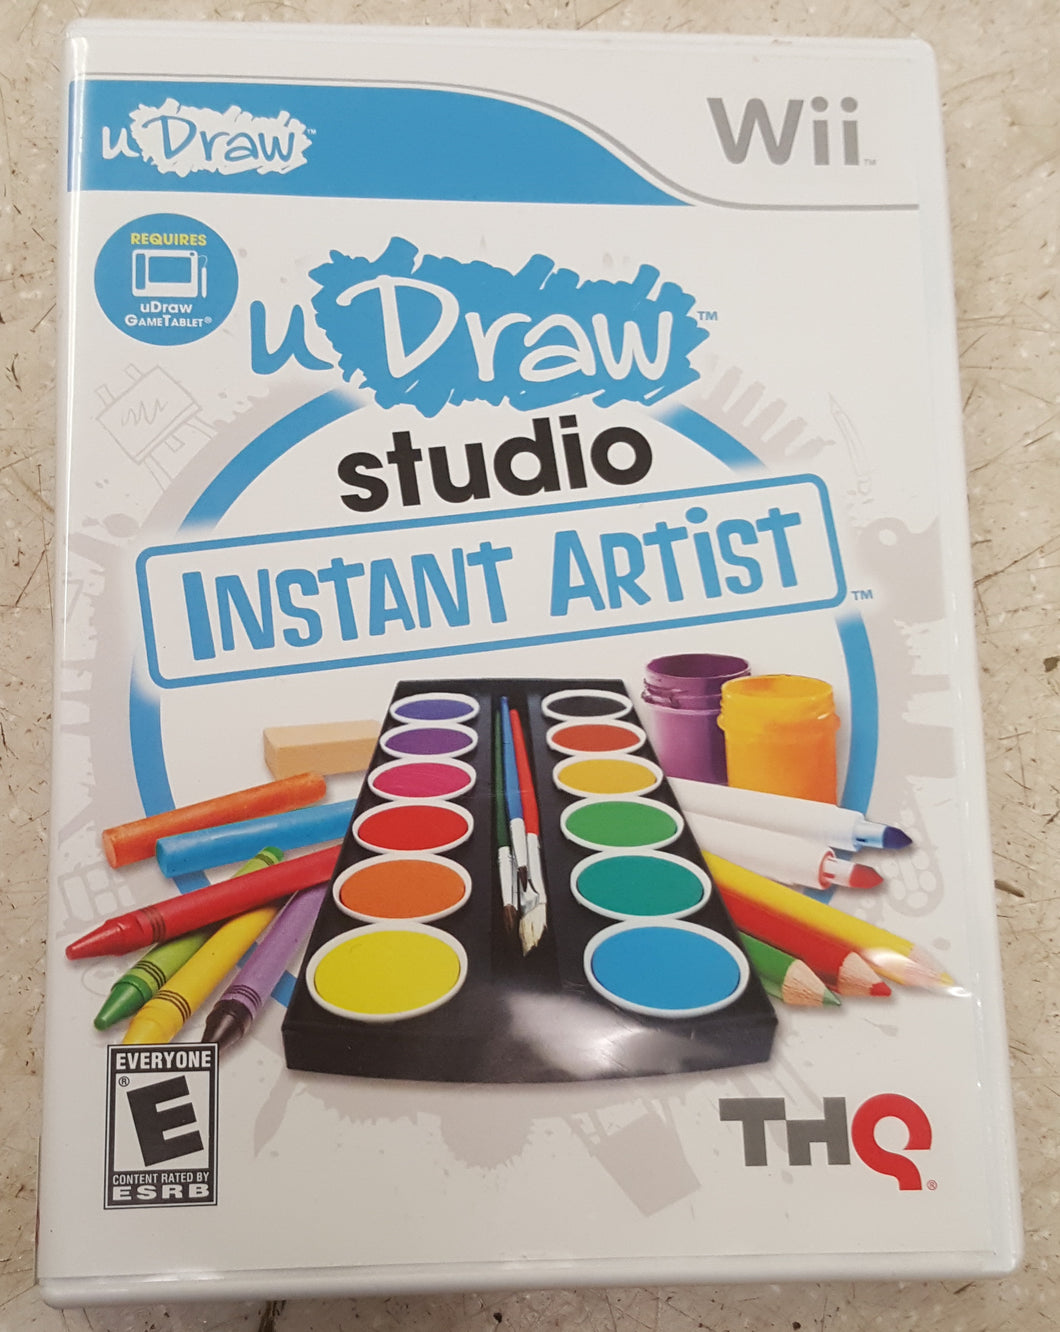 UDraw Studio: Instant Artist Wii Game